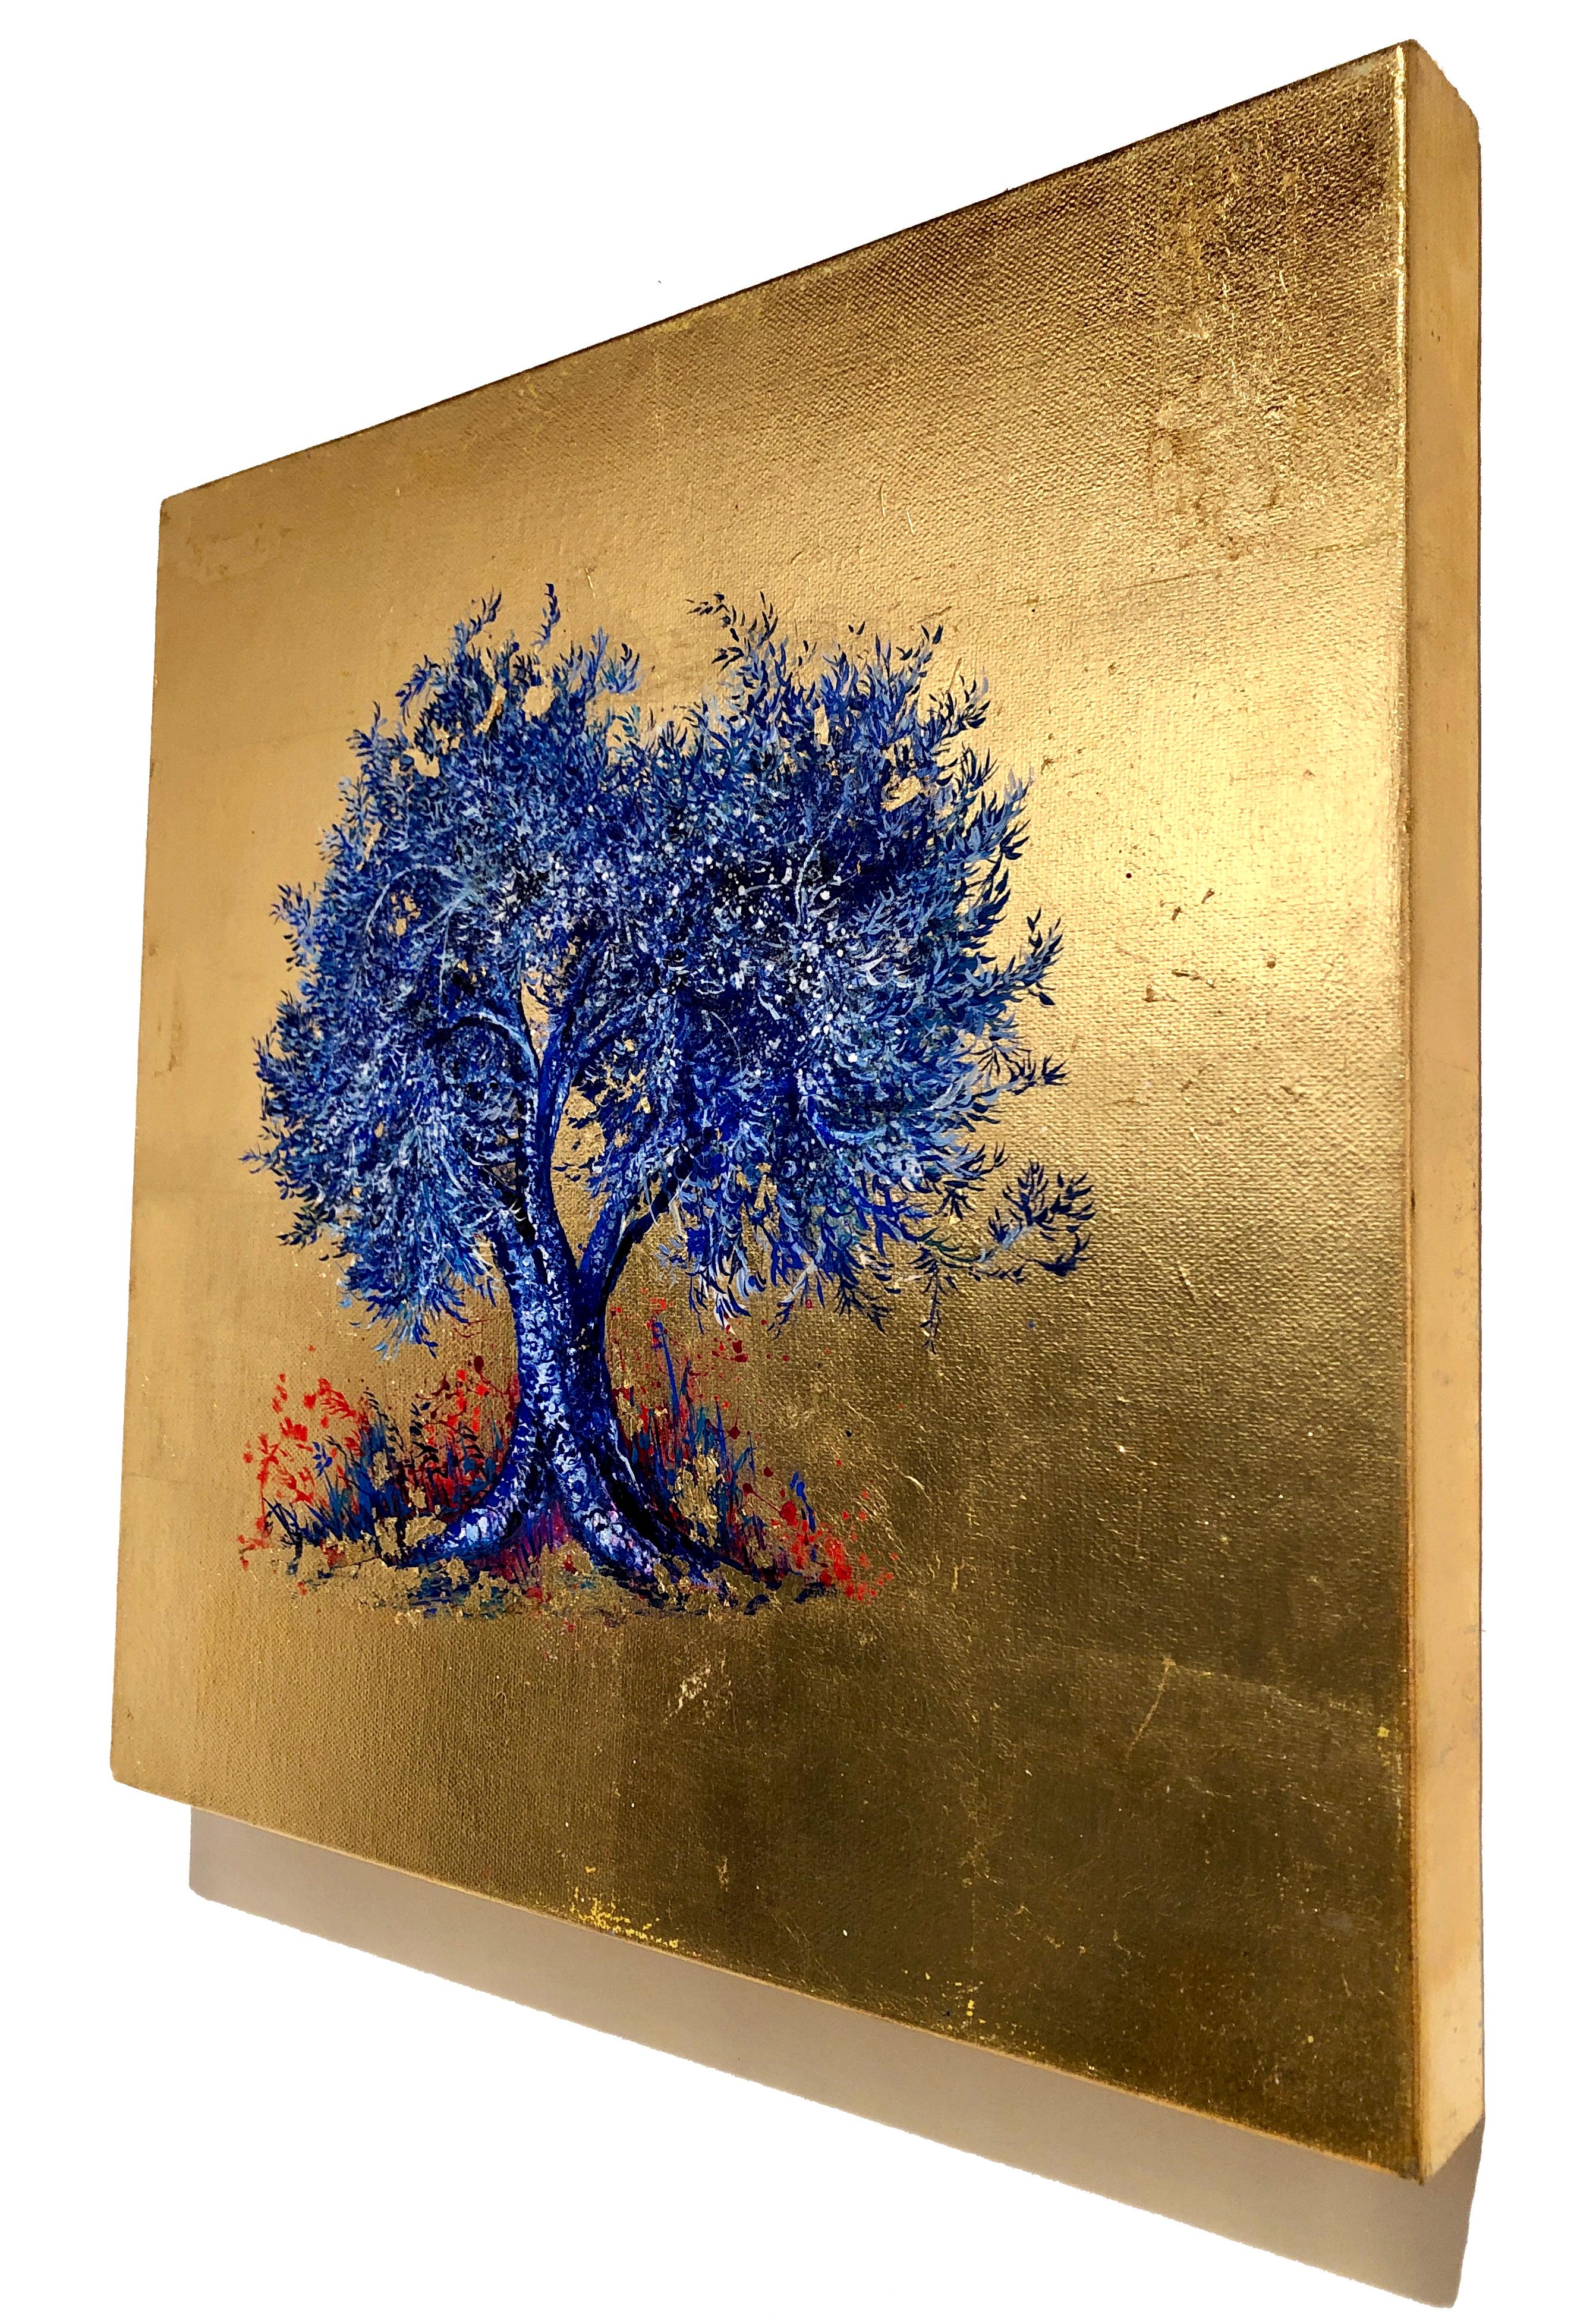 Zeitgenössisches Ölgemälde auf Leinwand:: Blattgold:: Indigo:: blühender blauer Baum 2